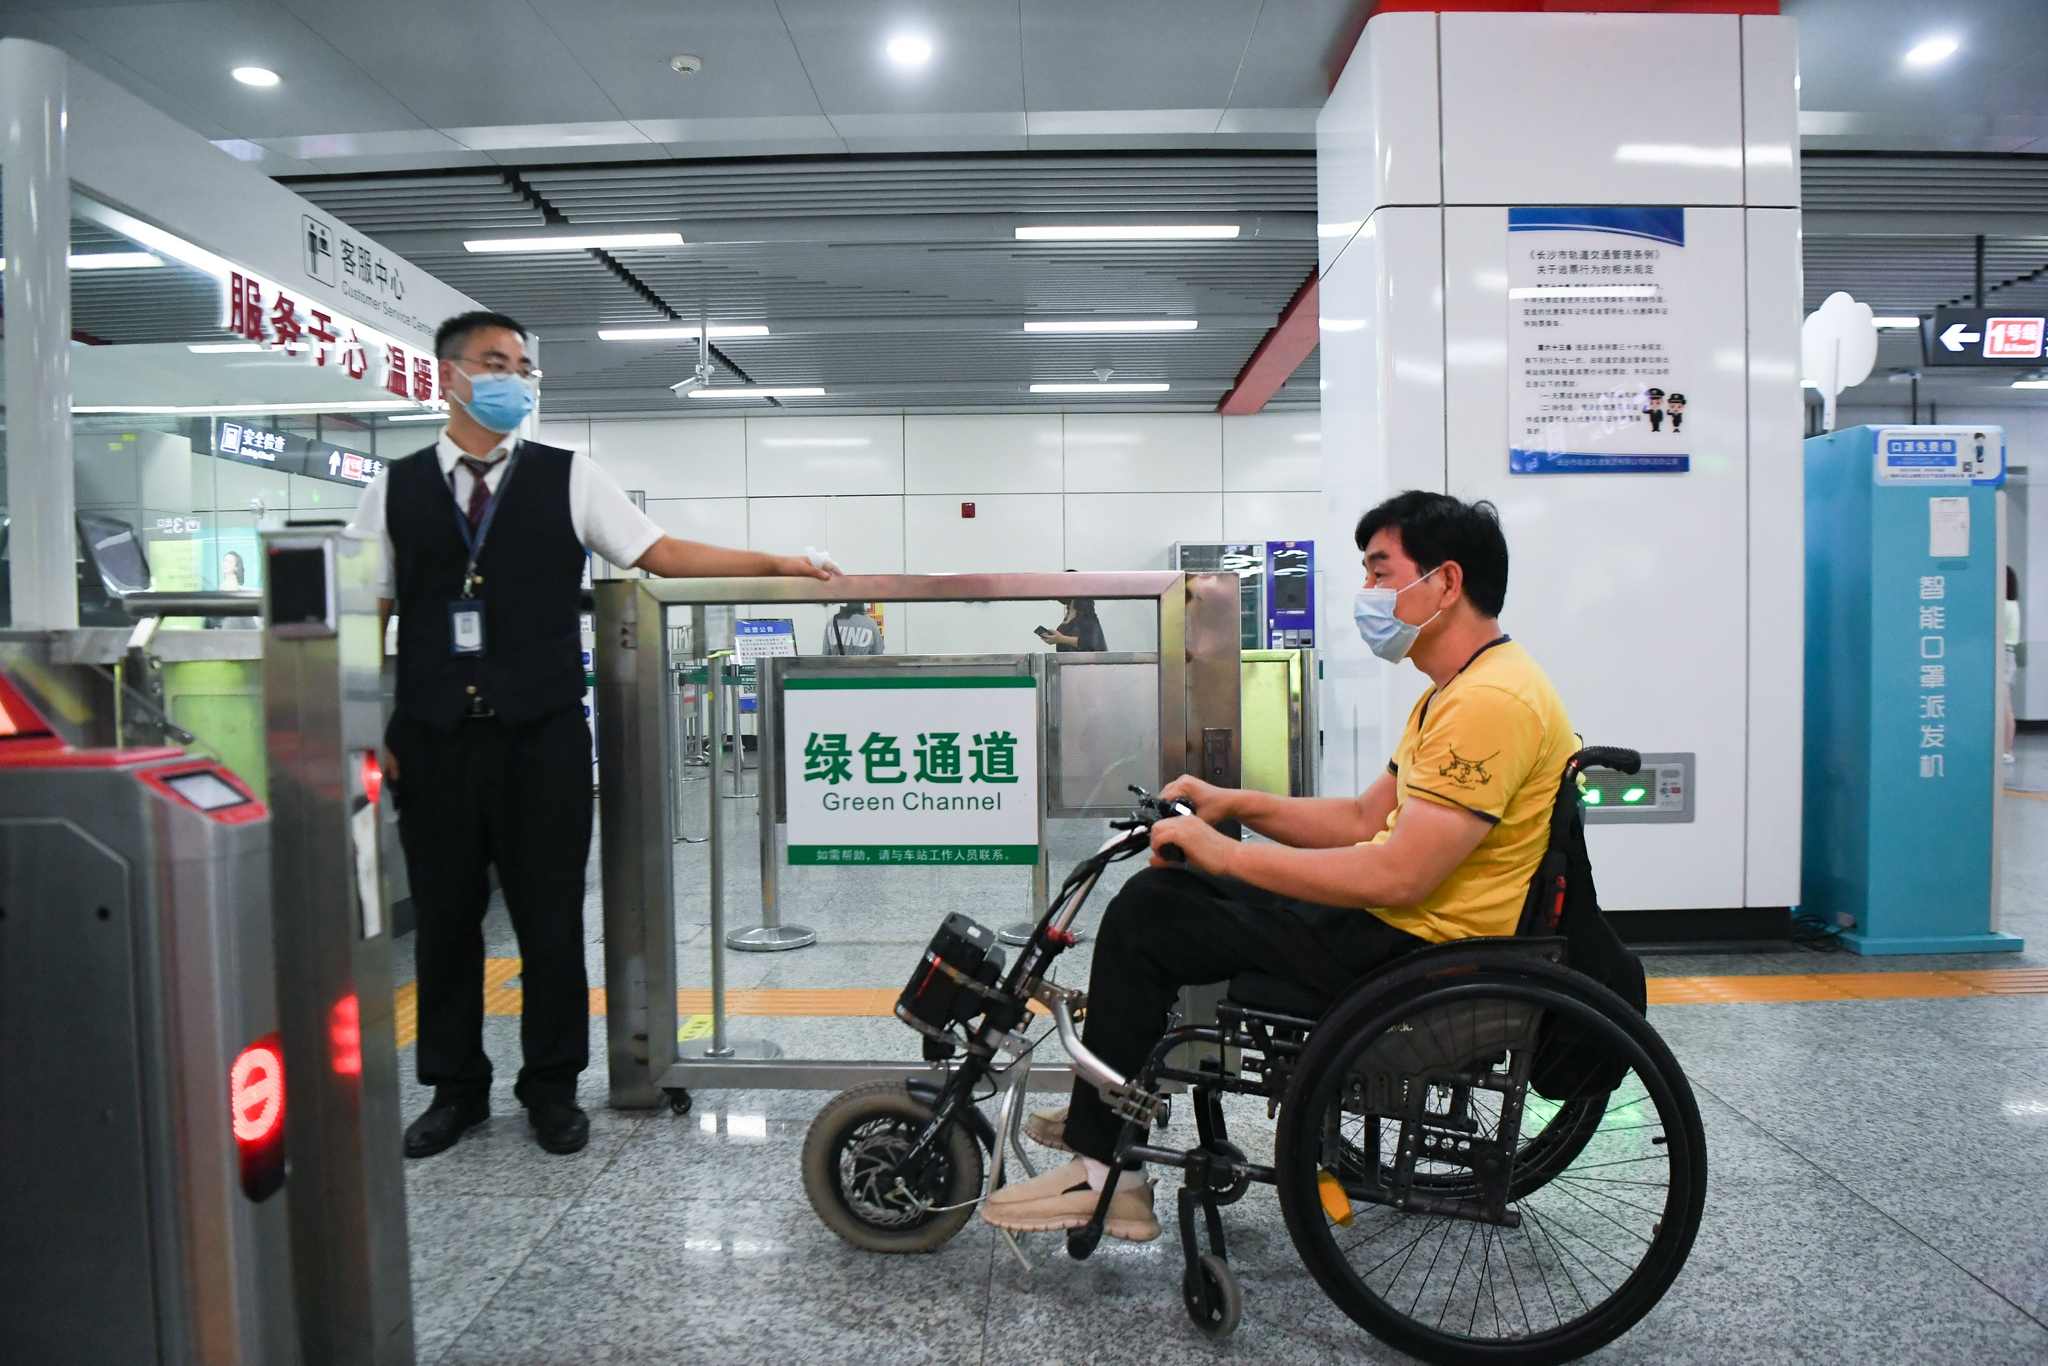 8月25日,伍树林(右)在湖南省长沙市桂花坪地铁站通过绿色通道进站乘车